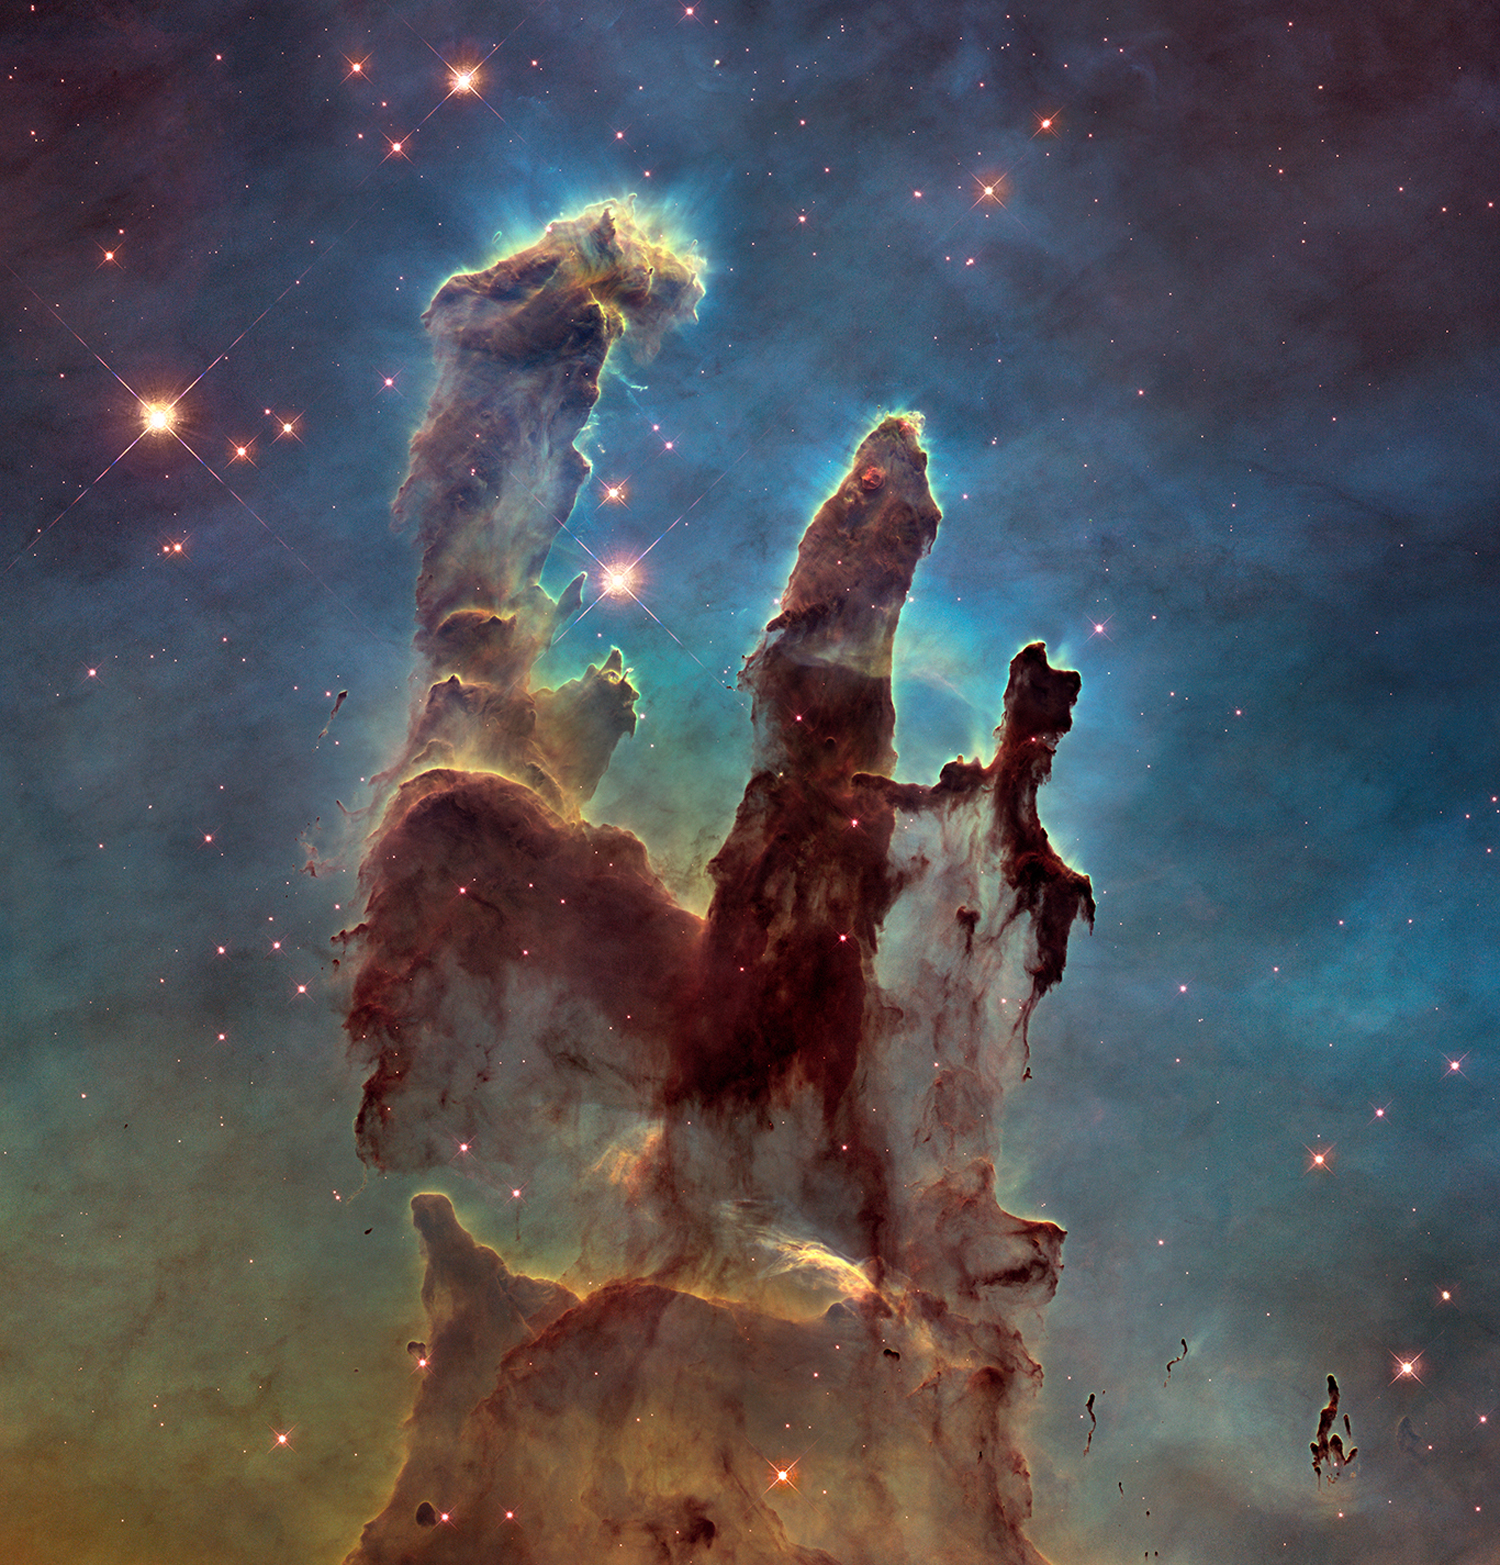 Nuove stelle stanno nascendo in queste torri di gas e polvere, chiamate i Pilastri della Creazione, nella Nebulosa Aquila.  È un'immagine iconica e una delle nostre migliori immagini spaziali di tutti i tempi.